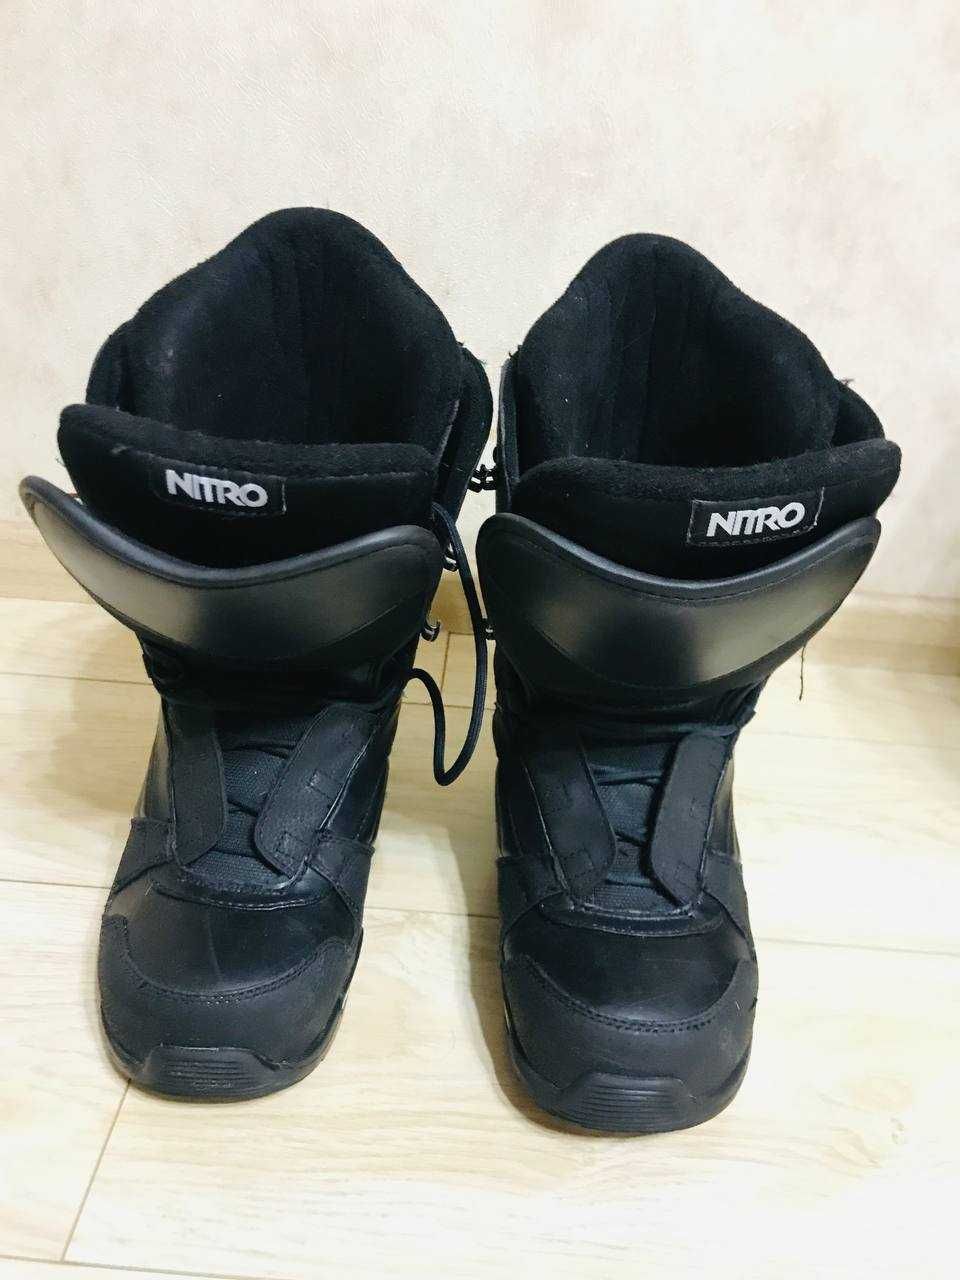 Взуття для сноуборду Nitro (Ботоси, ботинки) 42 - 43 р.